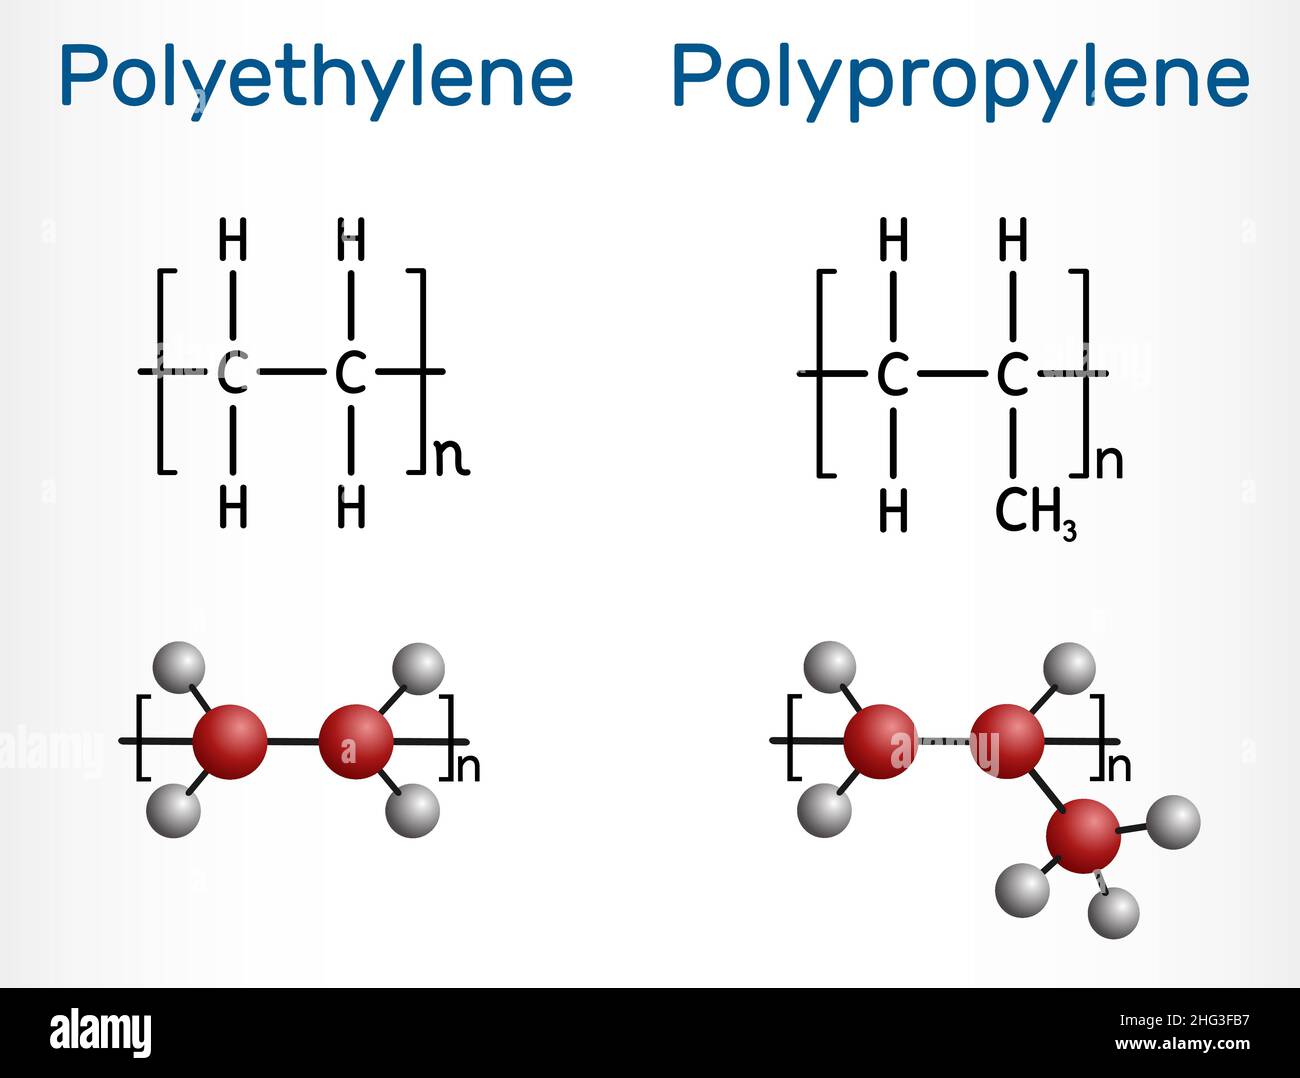 Molekül aus Polypropylen (PP, Polypropen) und Polyethylen (Polyethylen, PE, Polyethylen). Strukturelle chemische Formel und Molekülmodell von Polymeren. Vec Stock Vektor